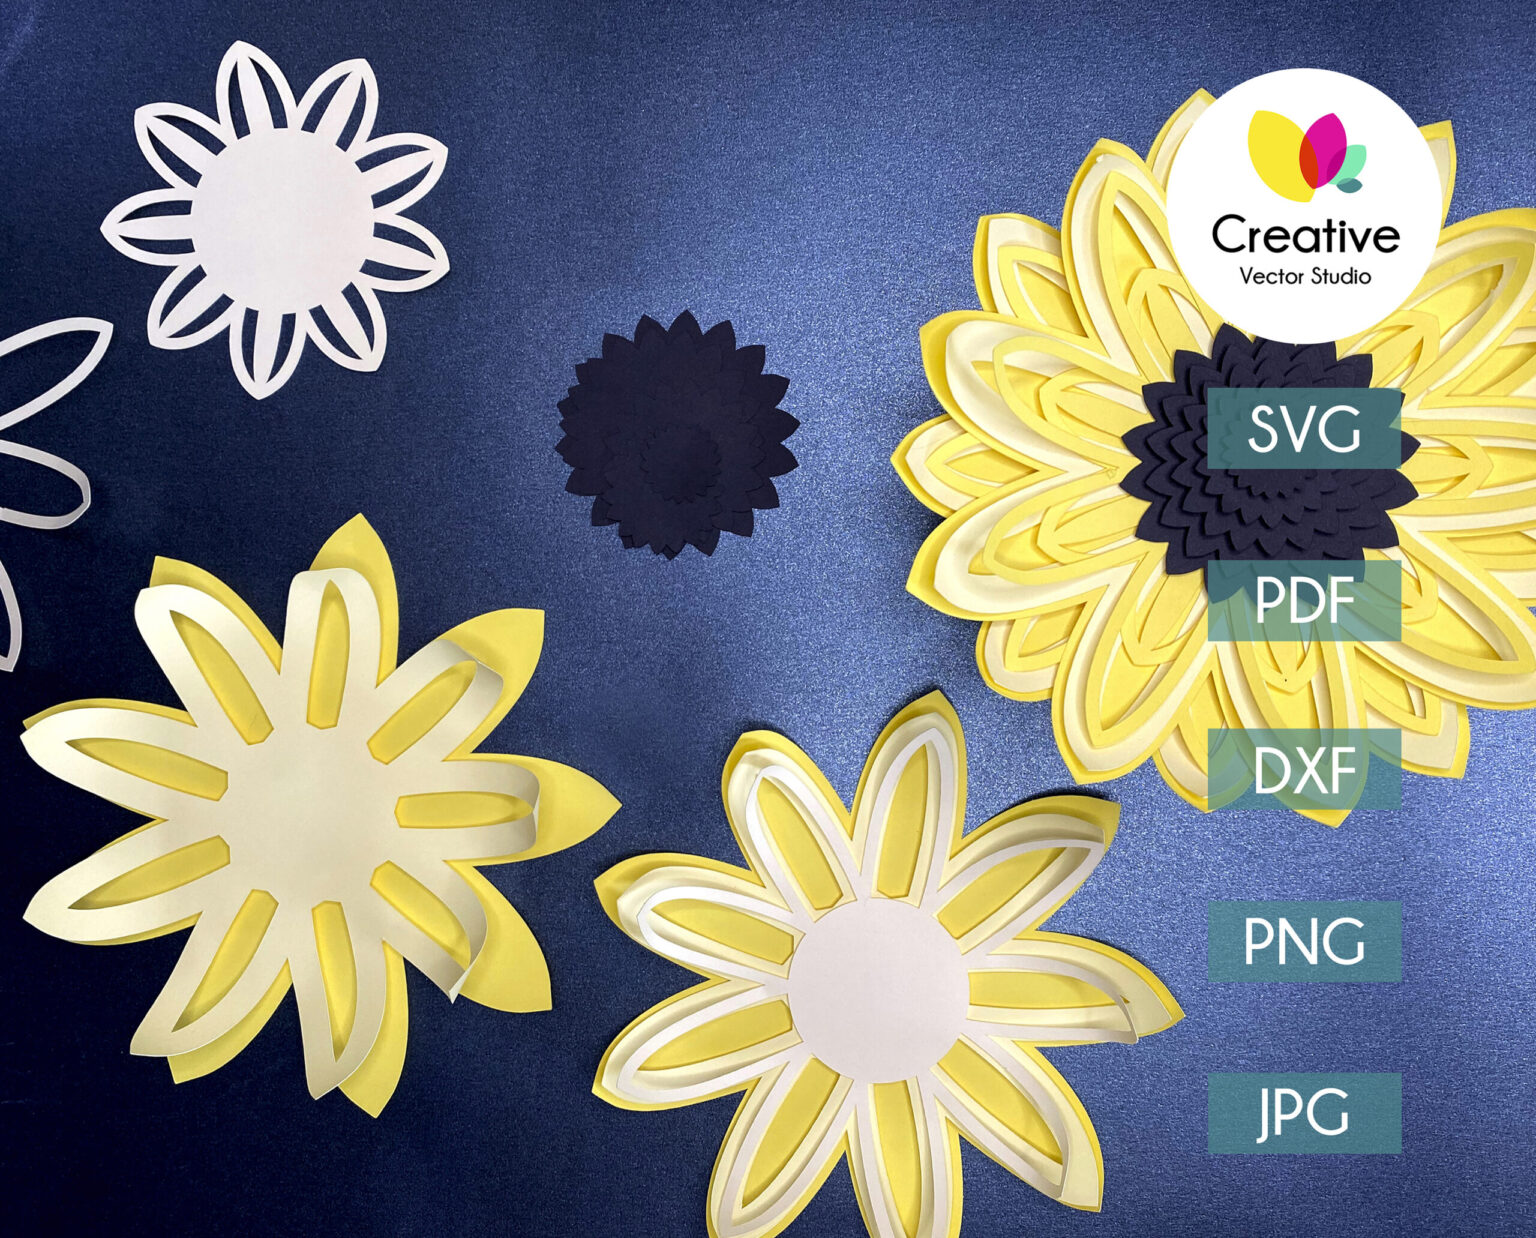 Sunflower SVG, DIY Paper Sunflower Craft Template, 3D ...